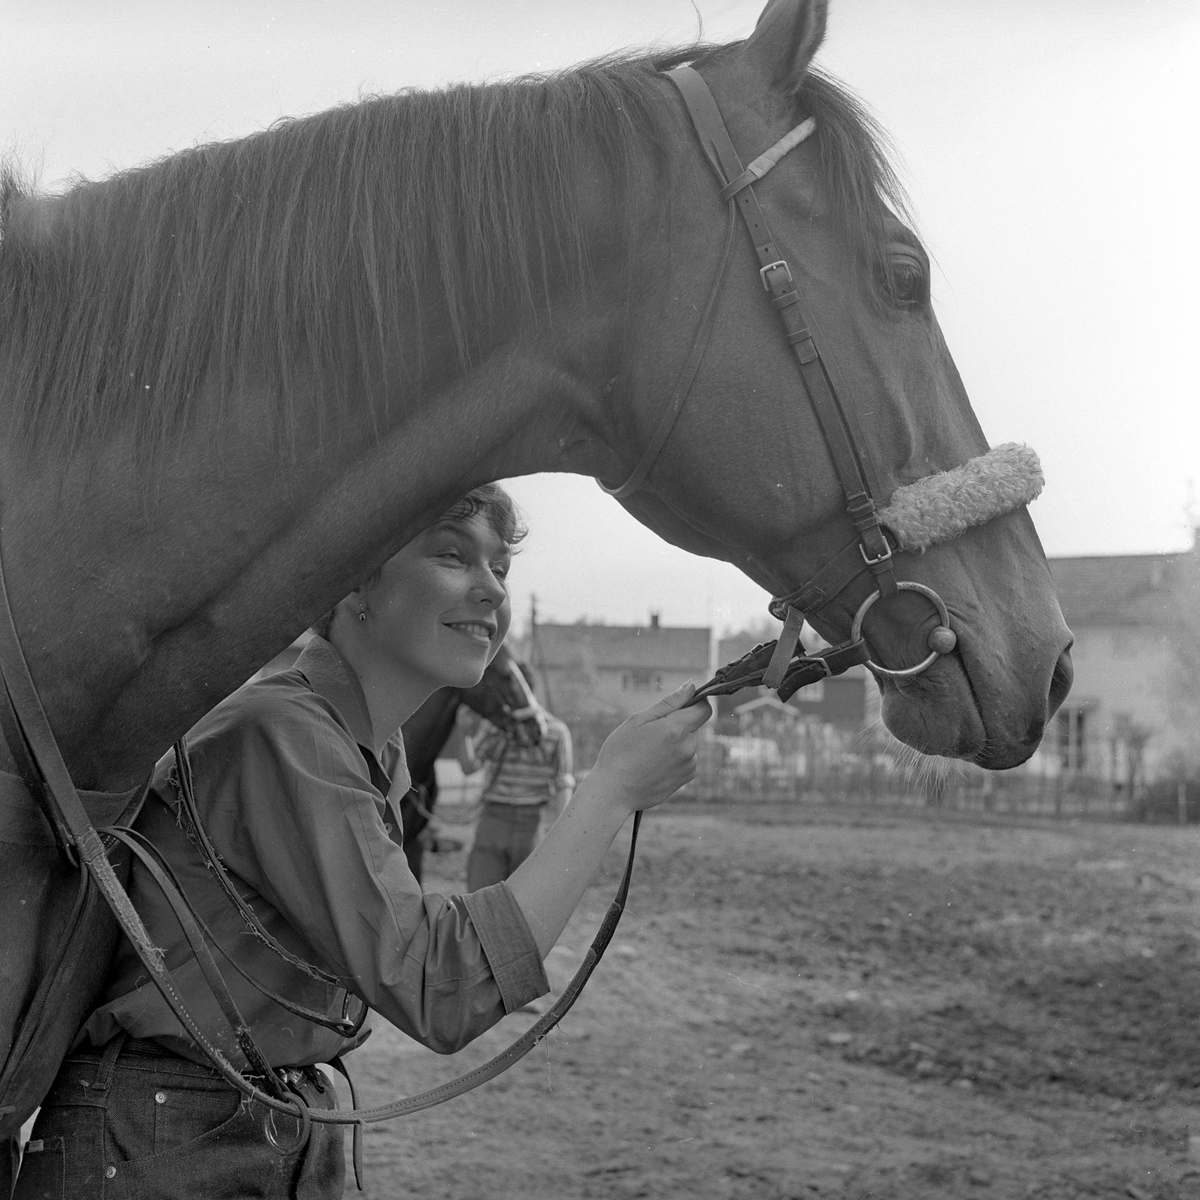 Kvinne med hest på Kjelsås hos Jaques Bergen.
Fotografert 1963.